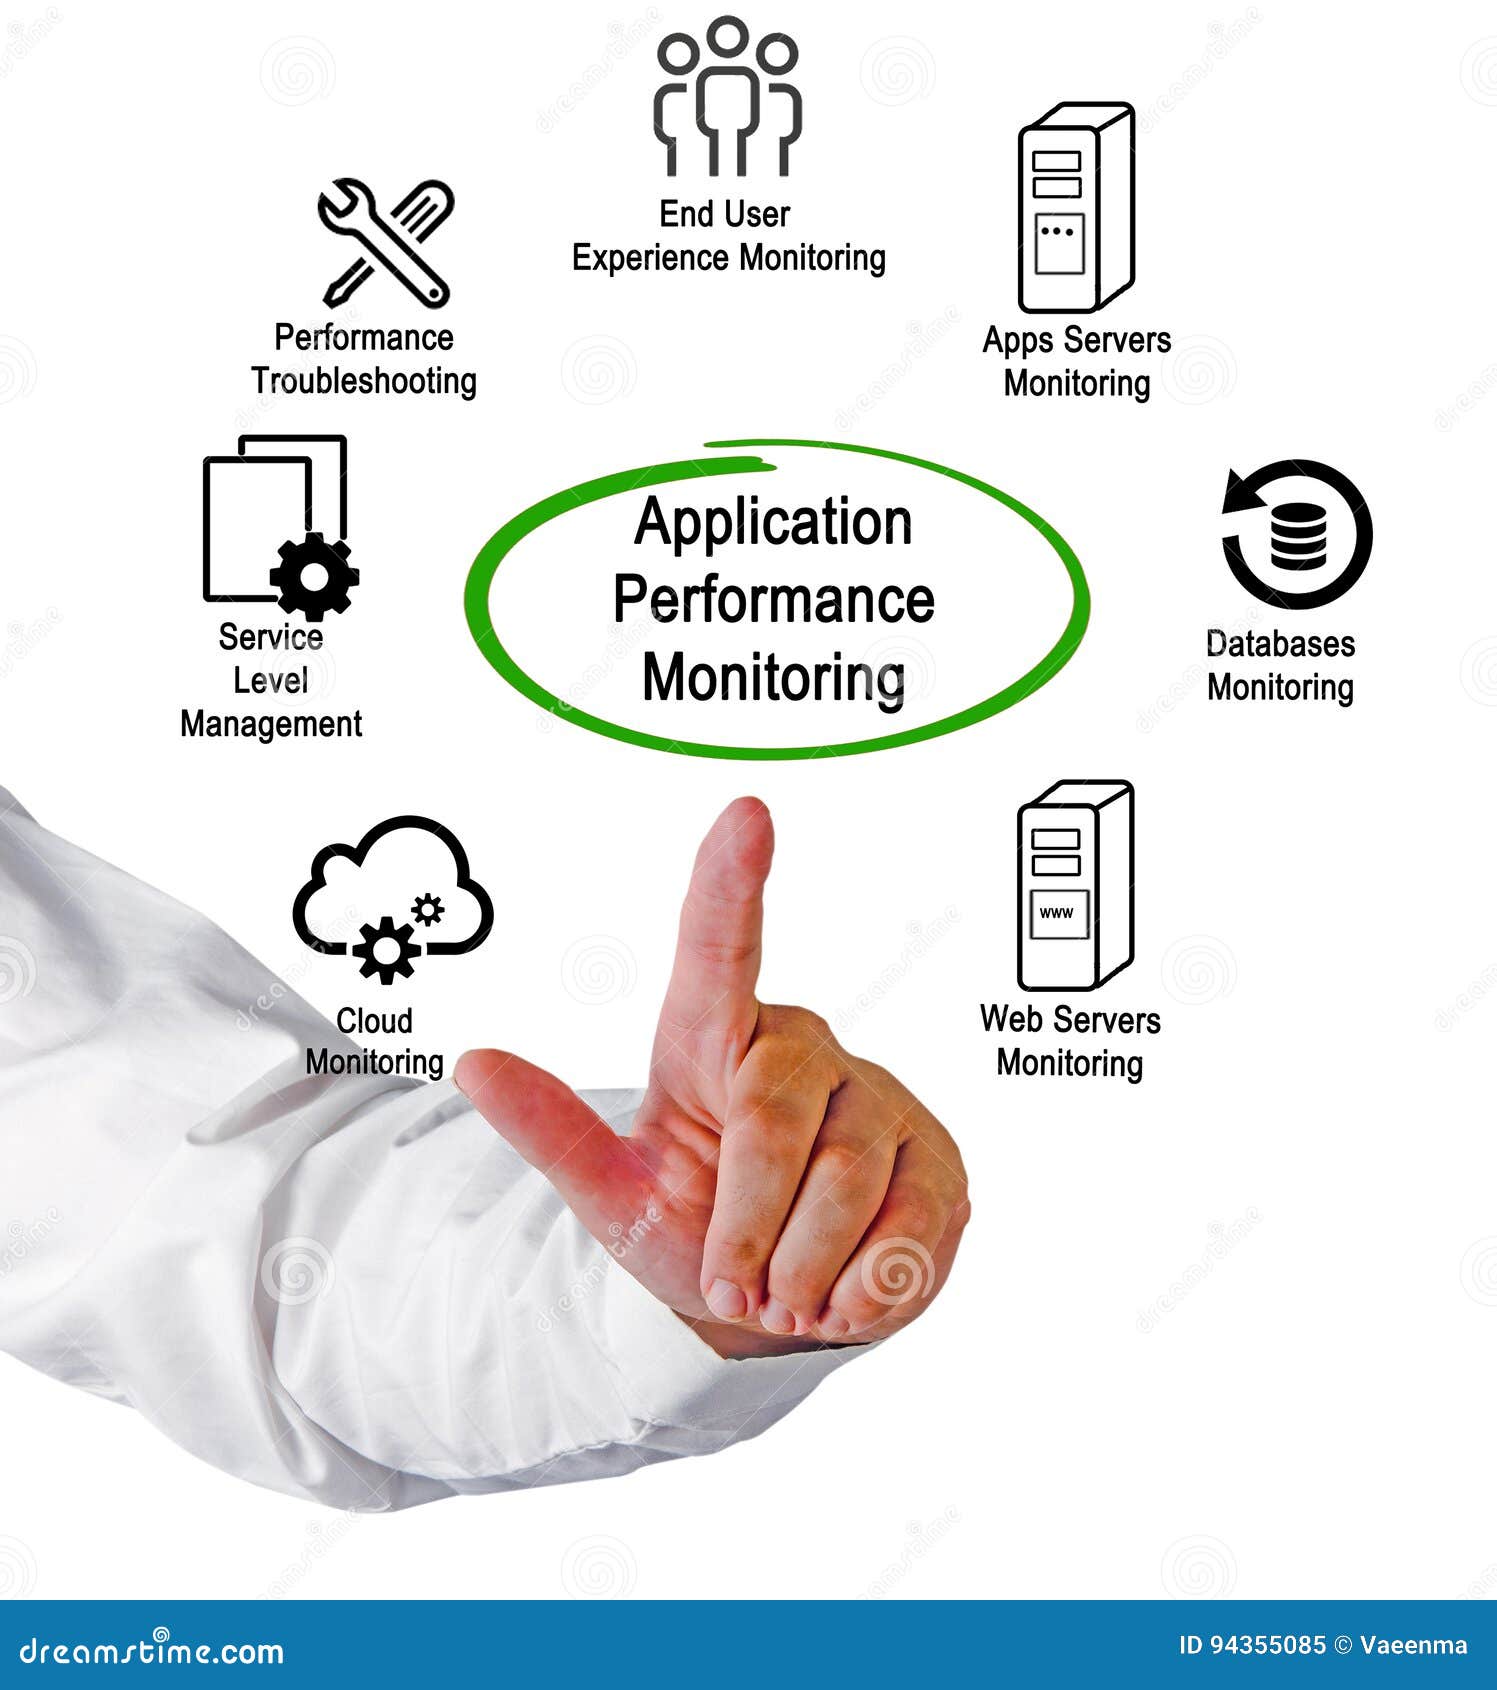 Application performance. Application Performance monitoring. App Performance monitoring. Performance monitoring & Management. Performance monitoring Tool.